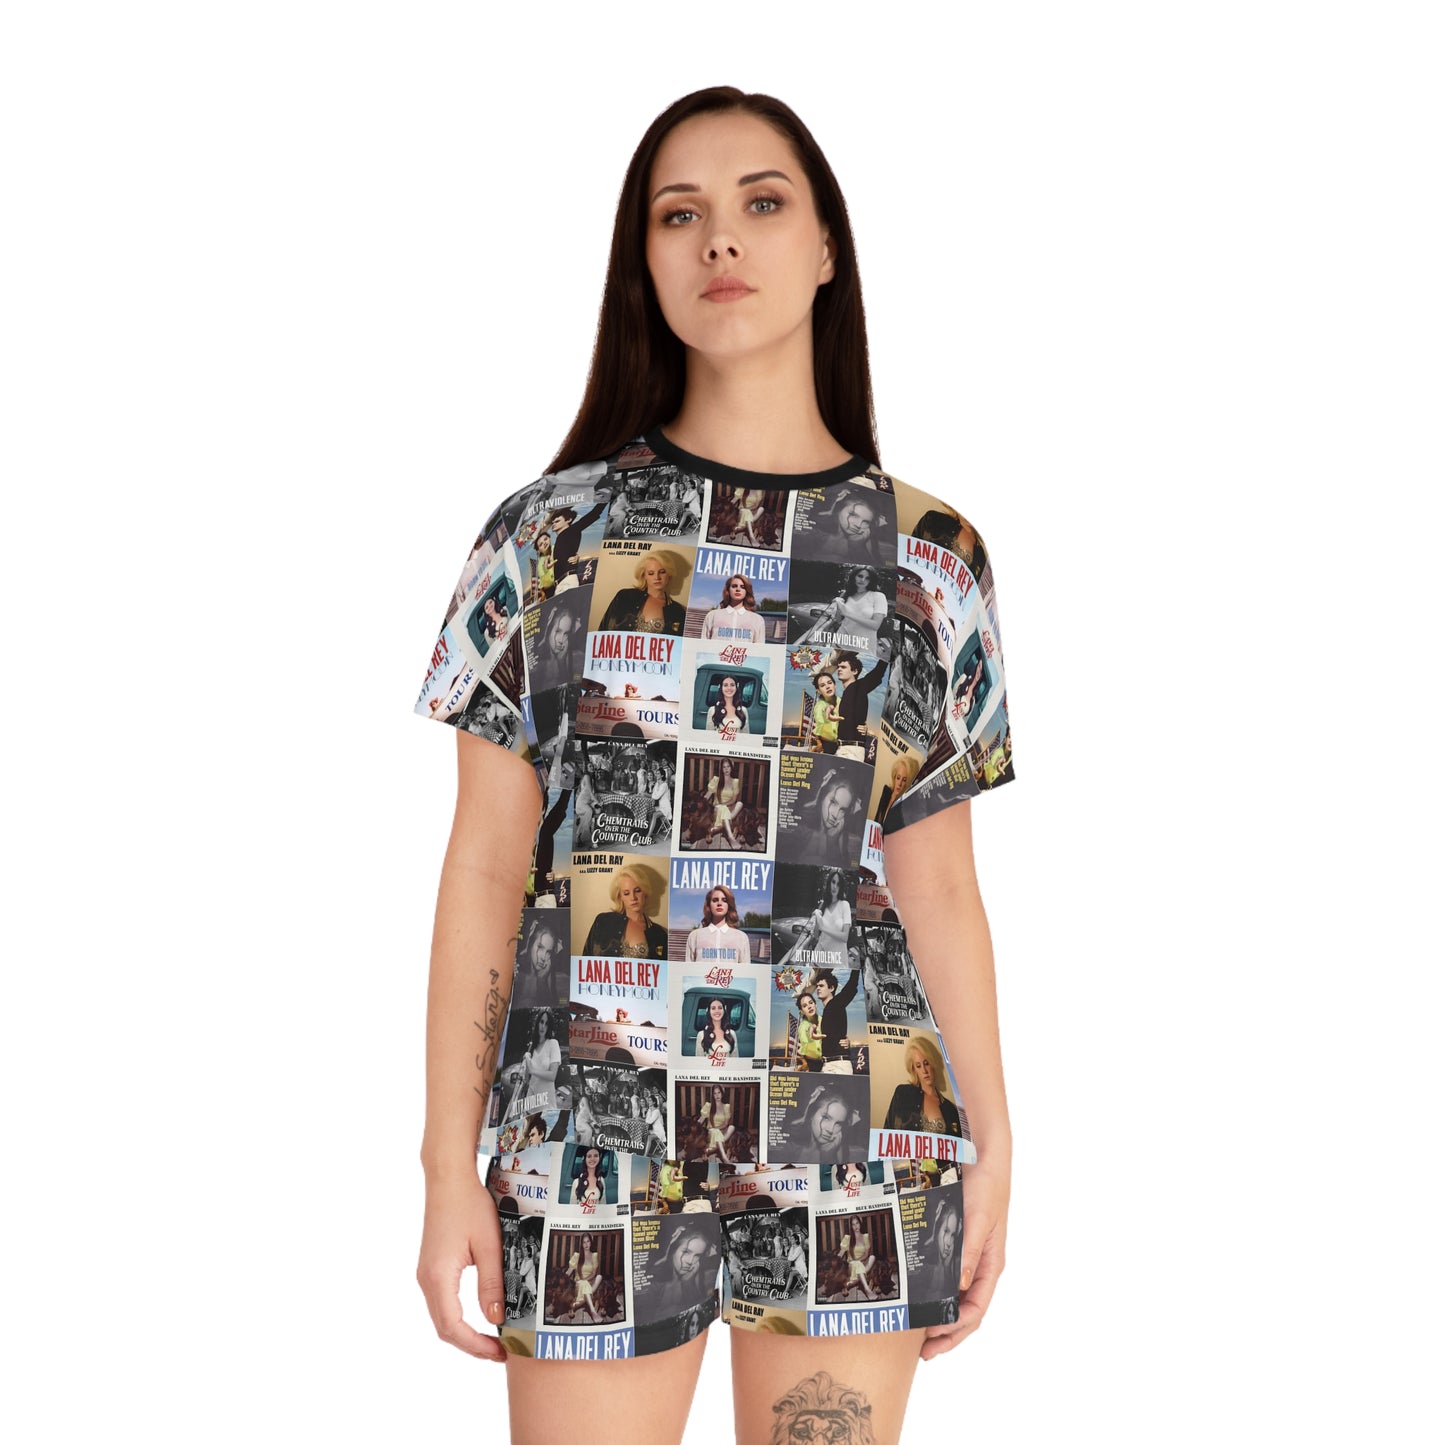 Lana Del Rey Album Cover Collage Women's Short Pajama Set